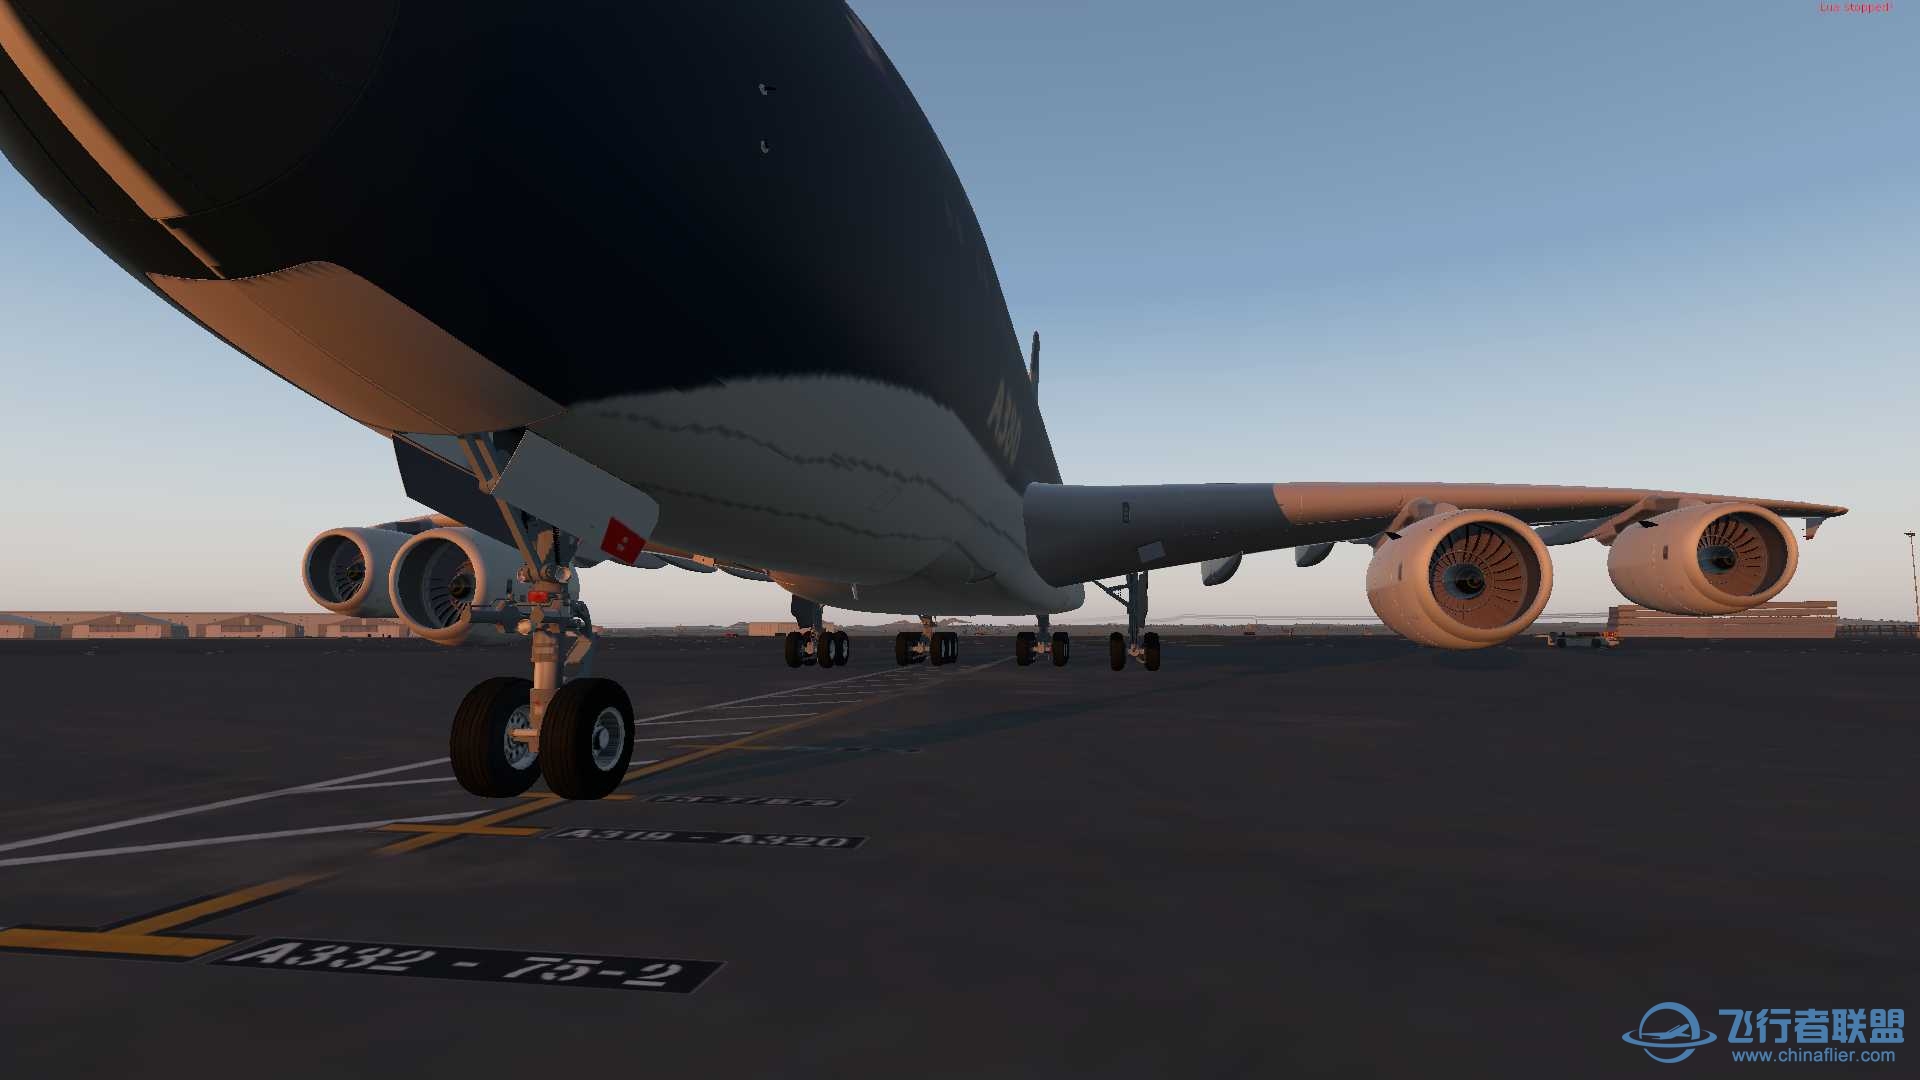 【首发自制】空客A380星海航空蓝鲸号飞翔从此大不同涂装-4342 